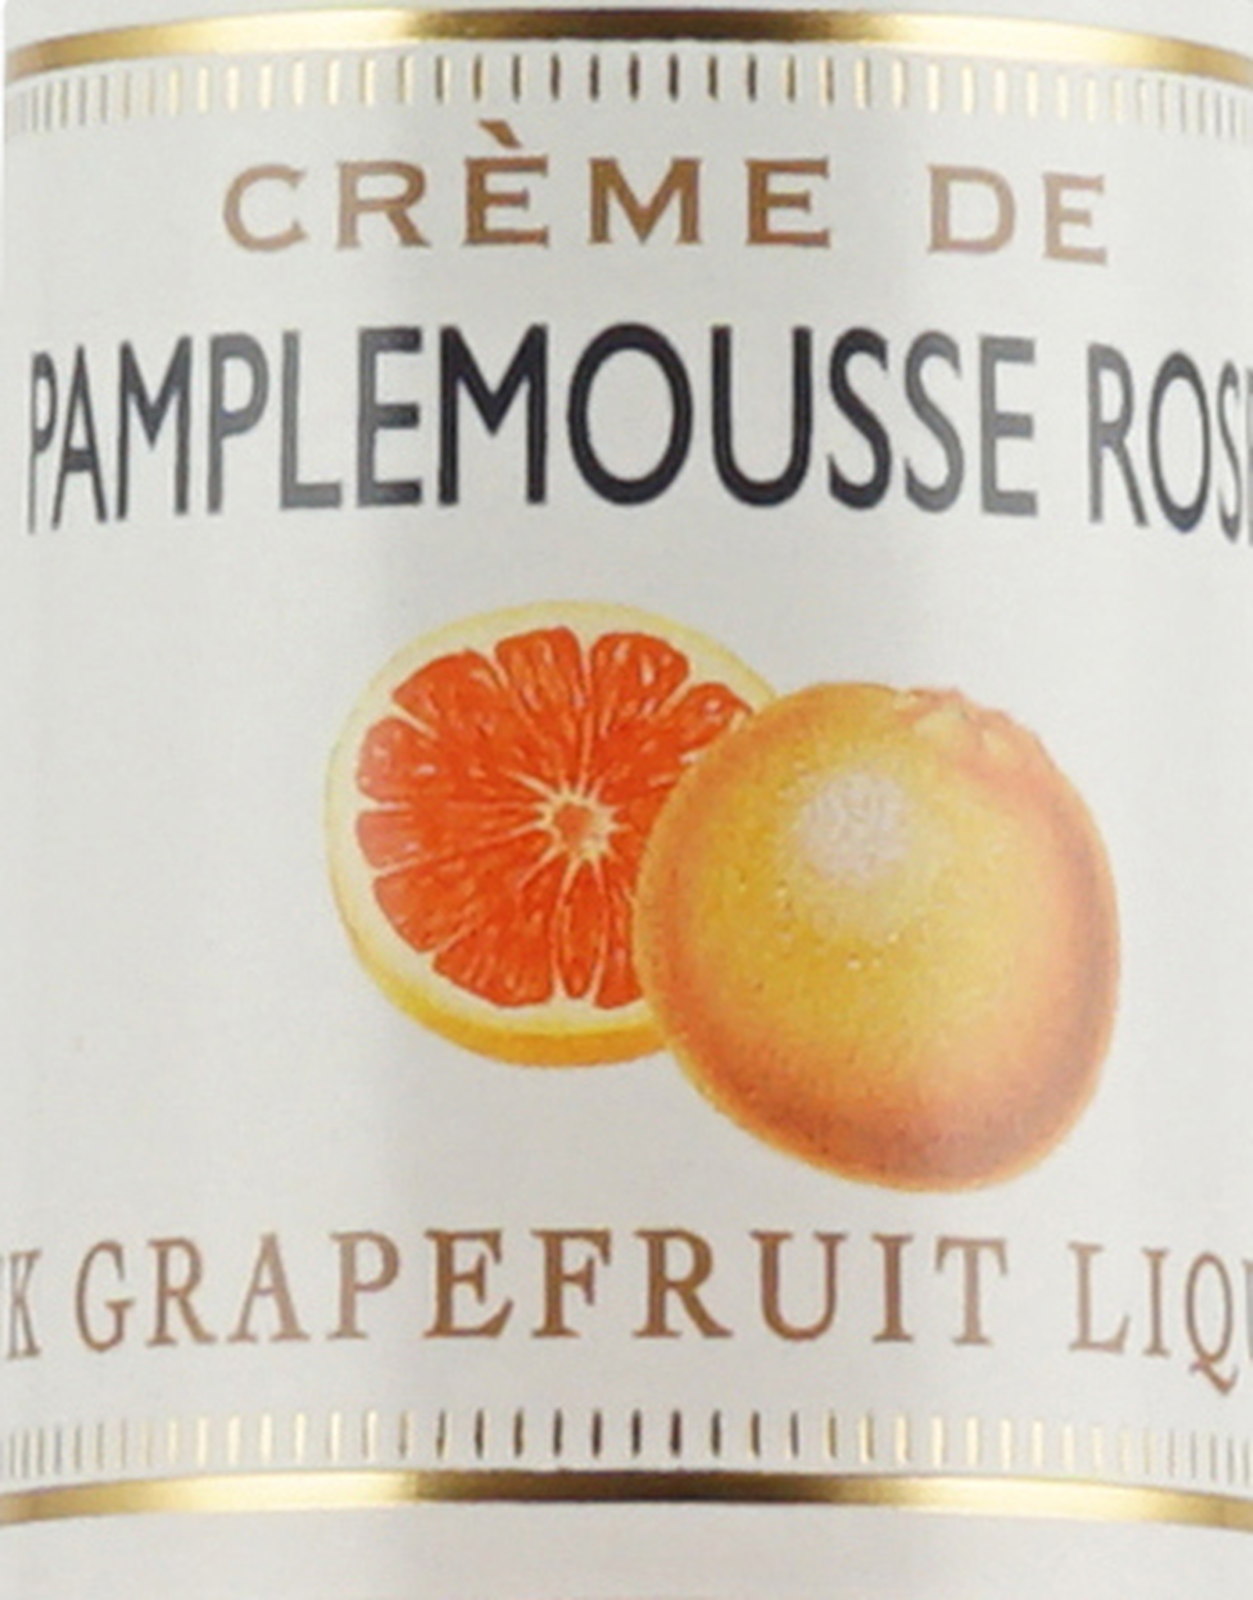 Crème de Pamplemousse rose (Pink Grapefruit)